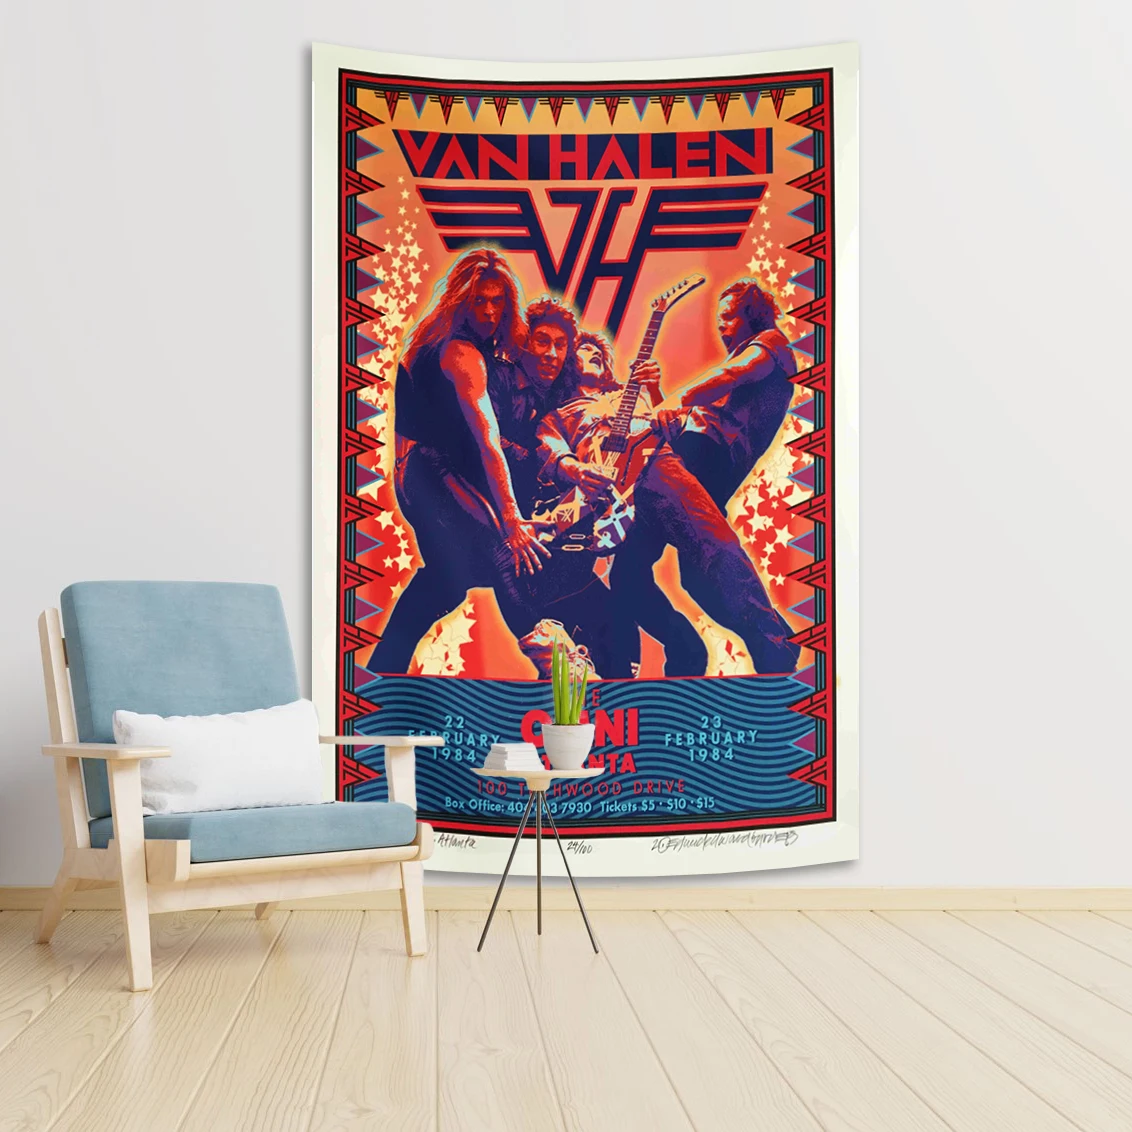 

Гобелен с изображением ван Халена группы рок-певицы 90 × 150 см, художественное изображение в стиле бохо, современные постеры для домашнего декора для семейной спальни